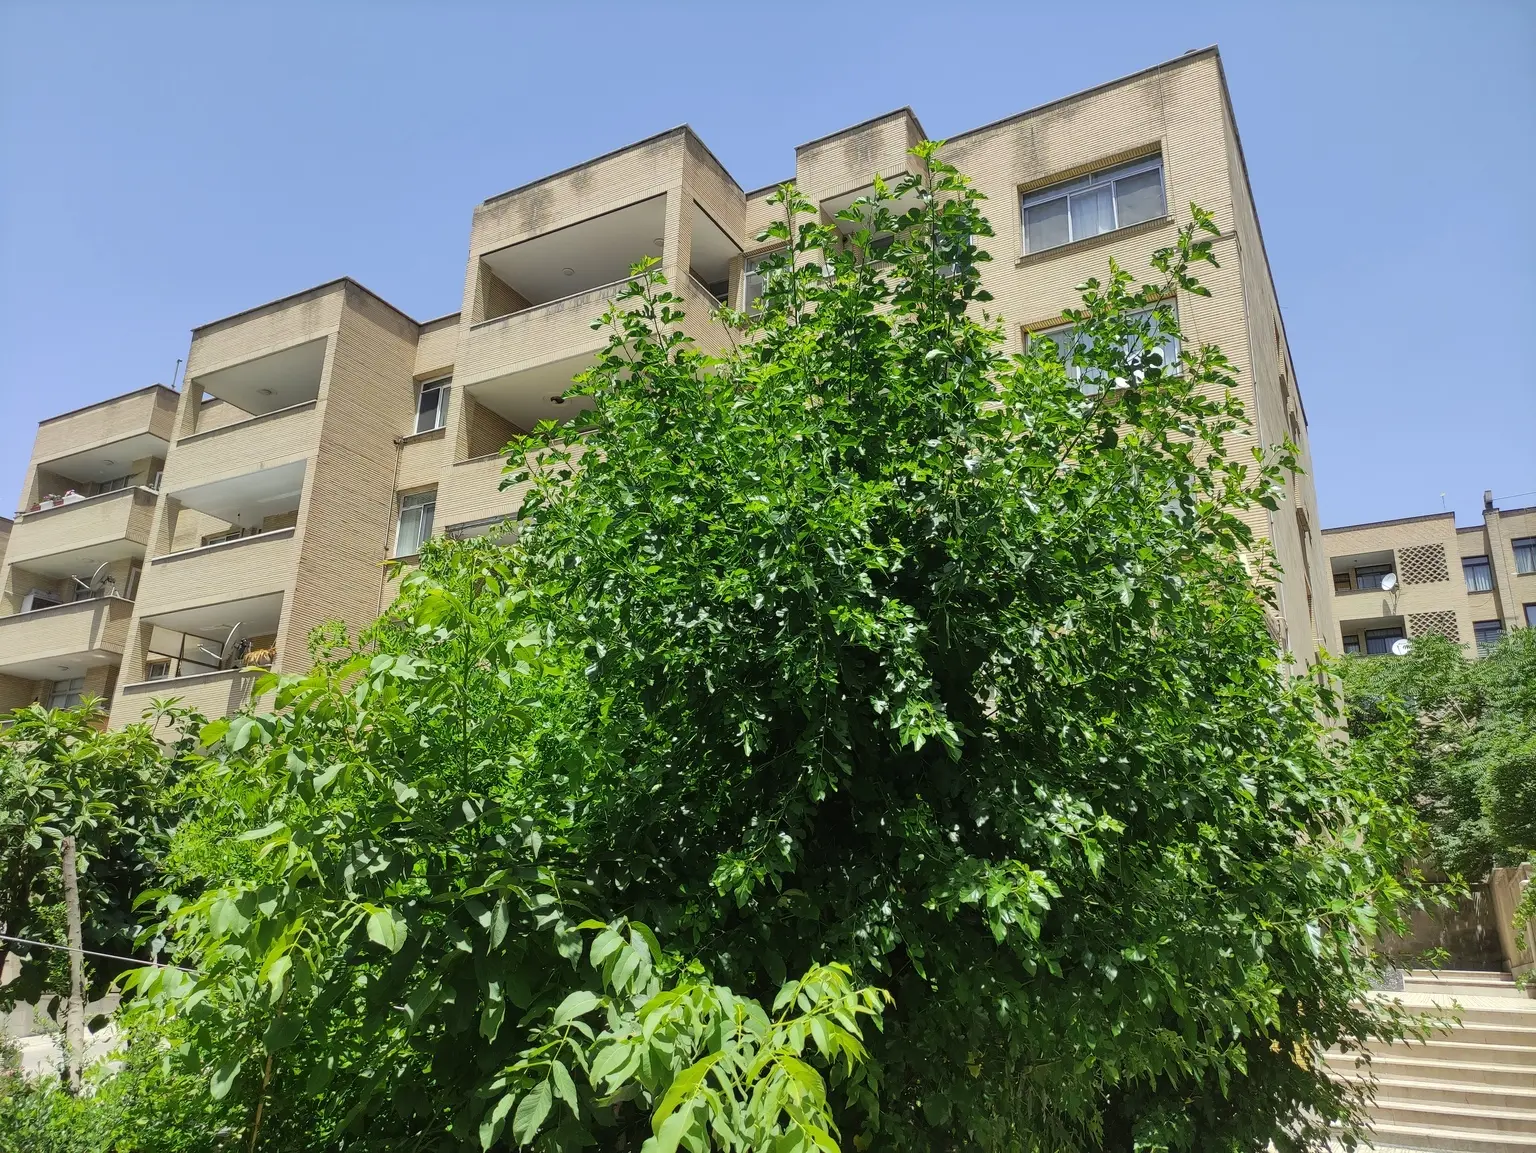  اجاره آپارتمان 180 متری ۳ خواب در شهرک غرب پیروزان